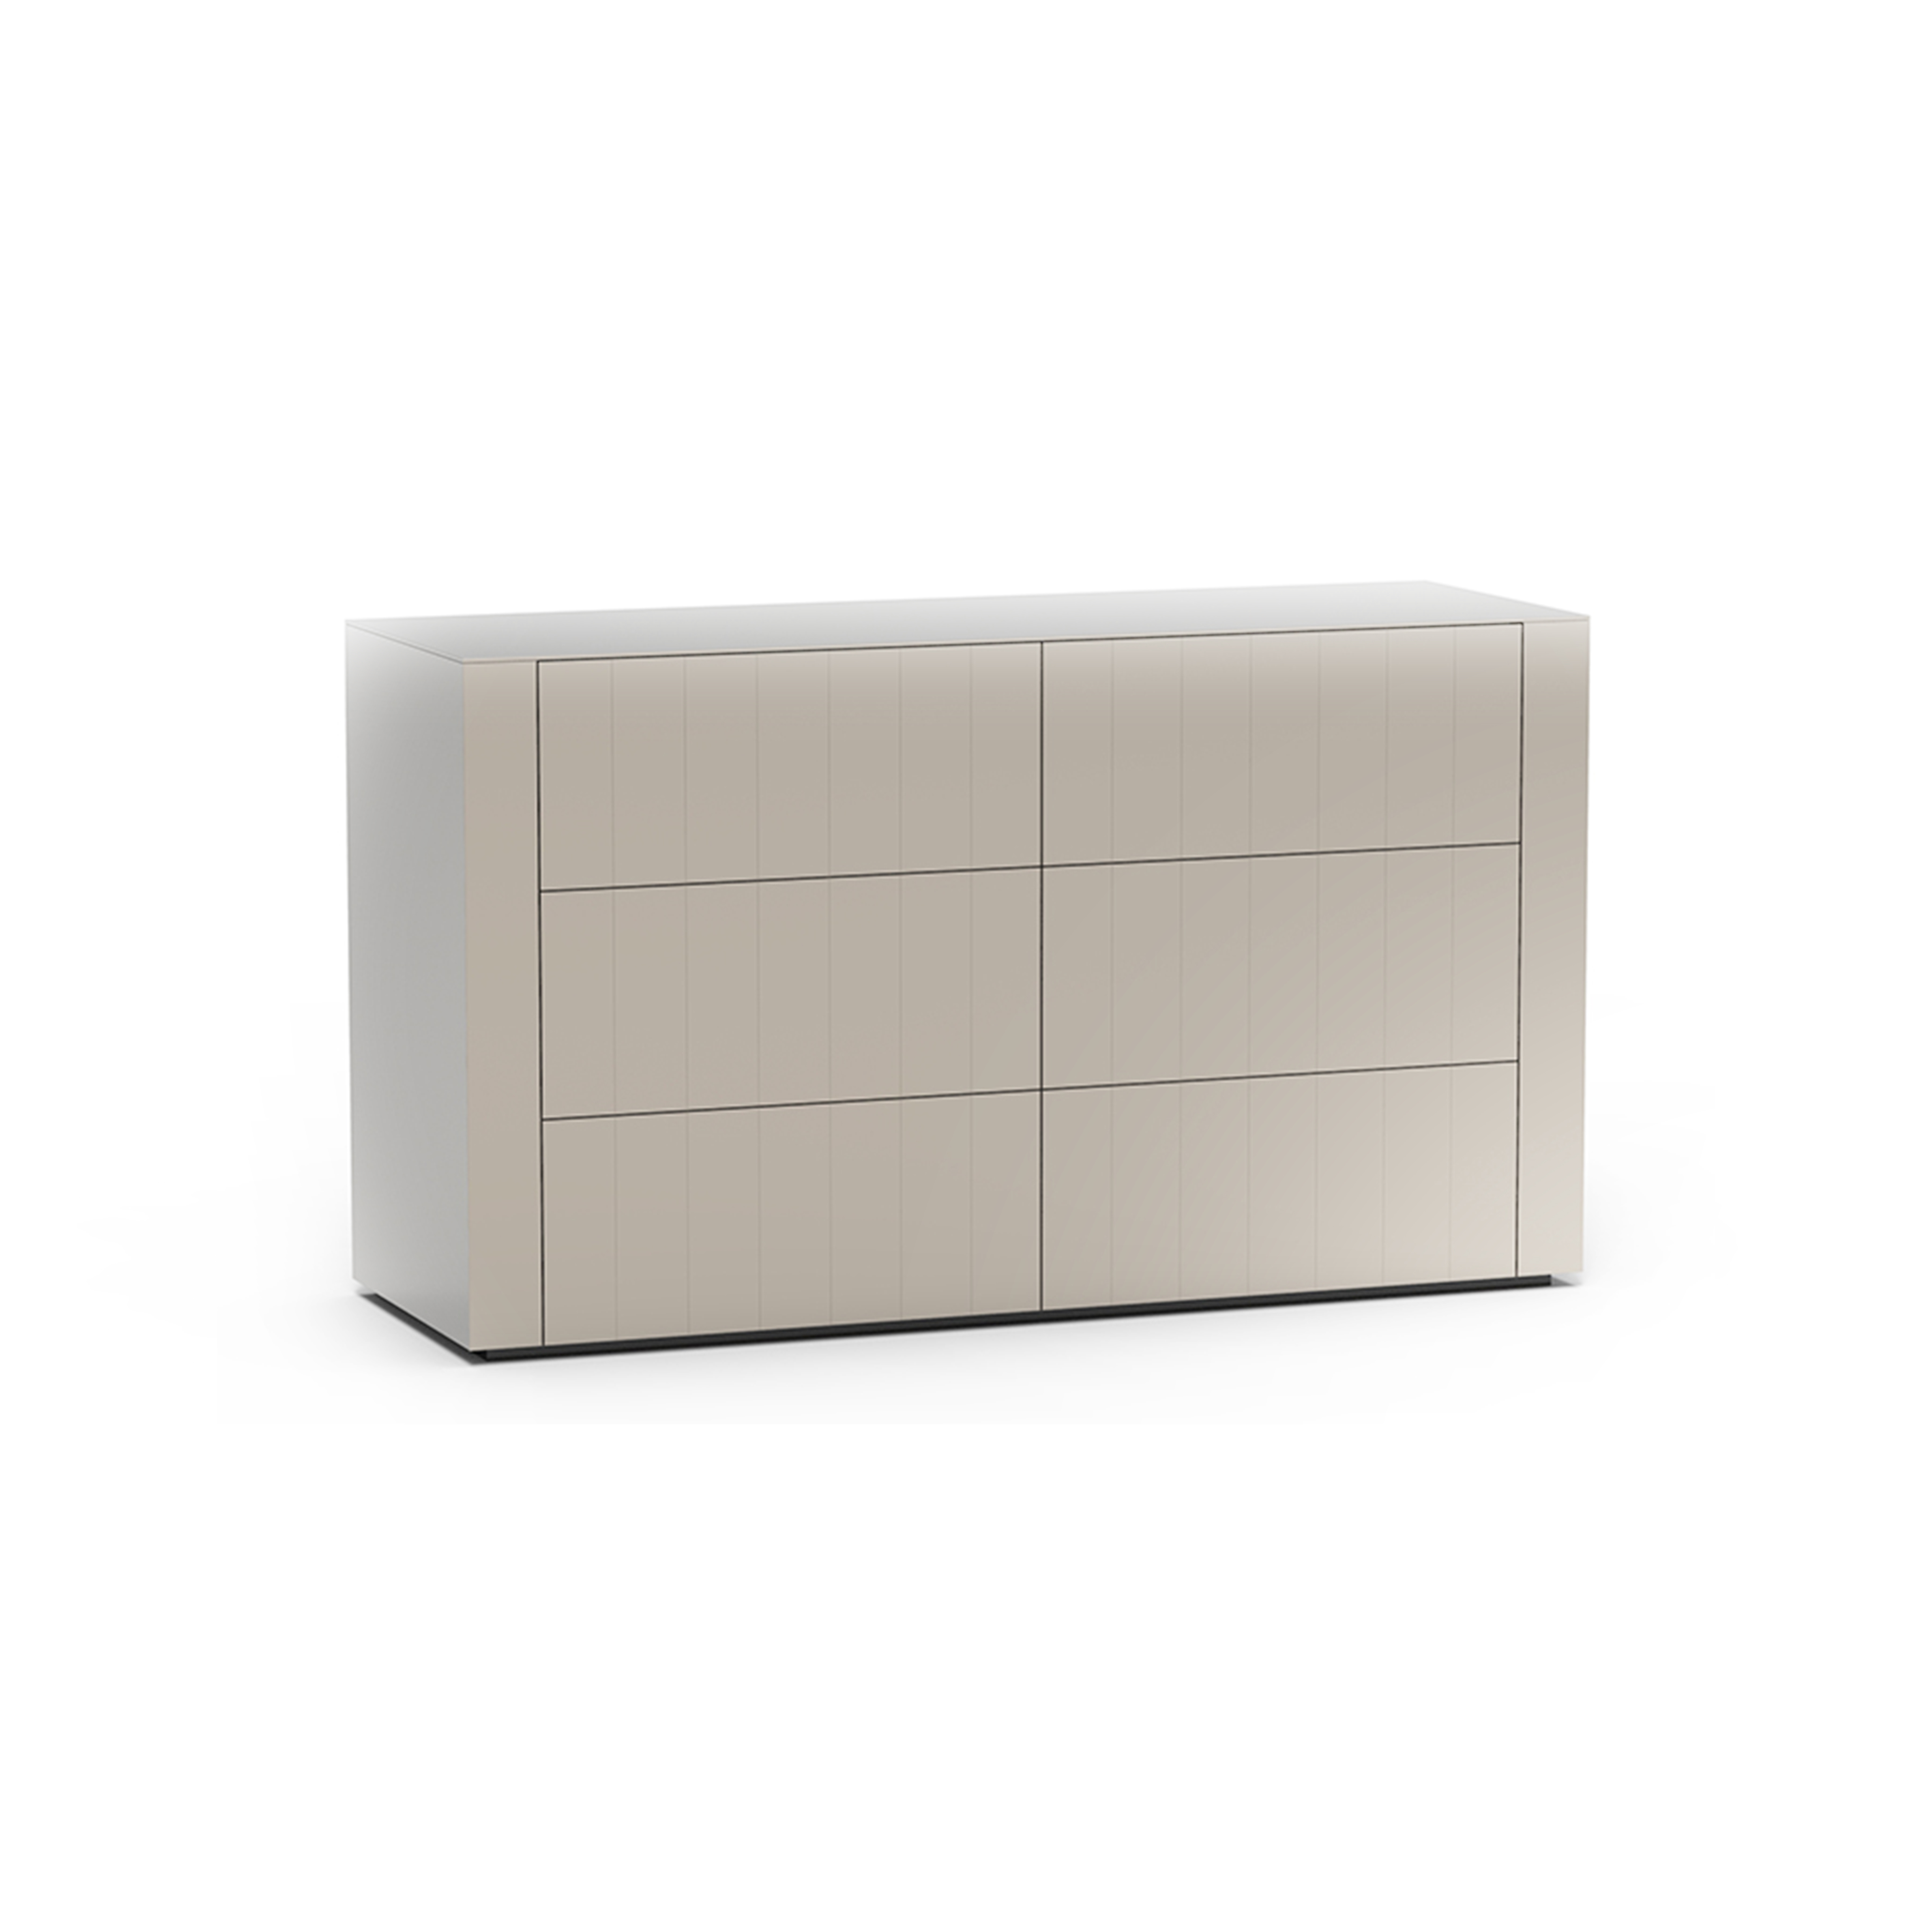 Luxuryfurniturelonon-Soho-Chest-of-drawers-img1